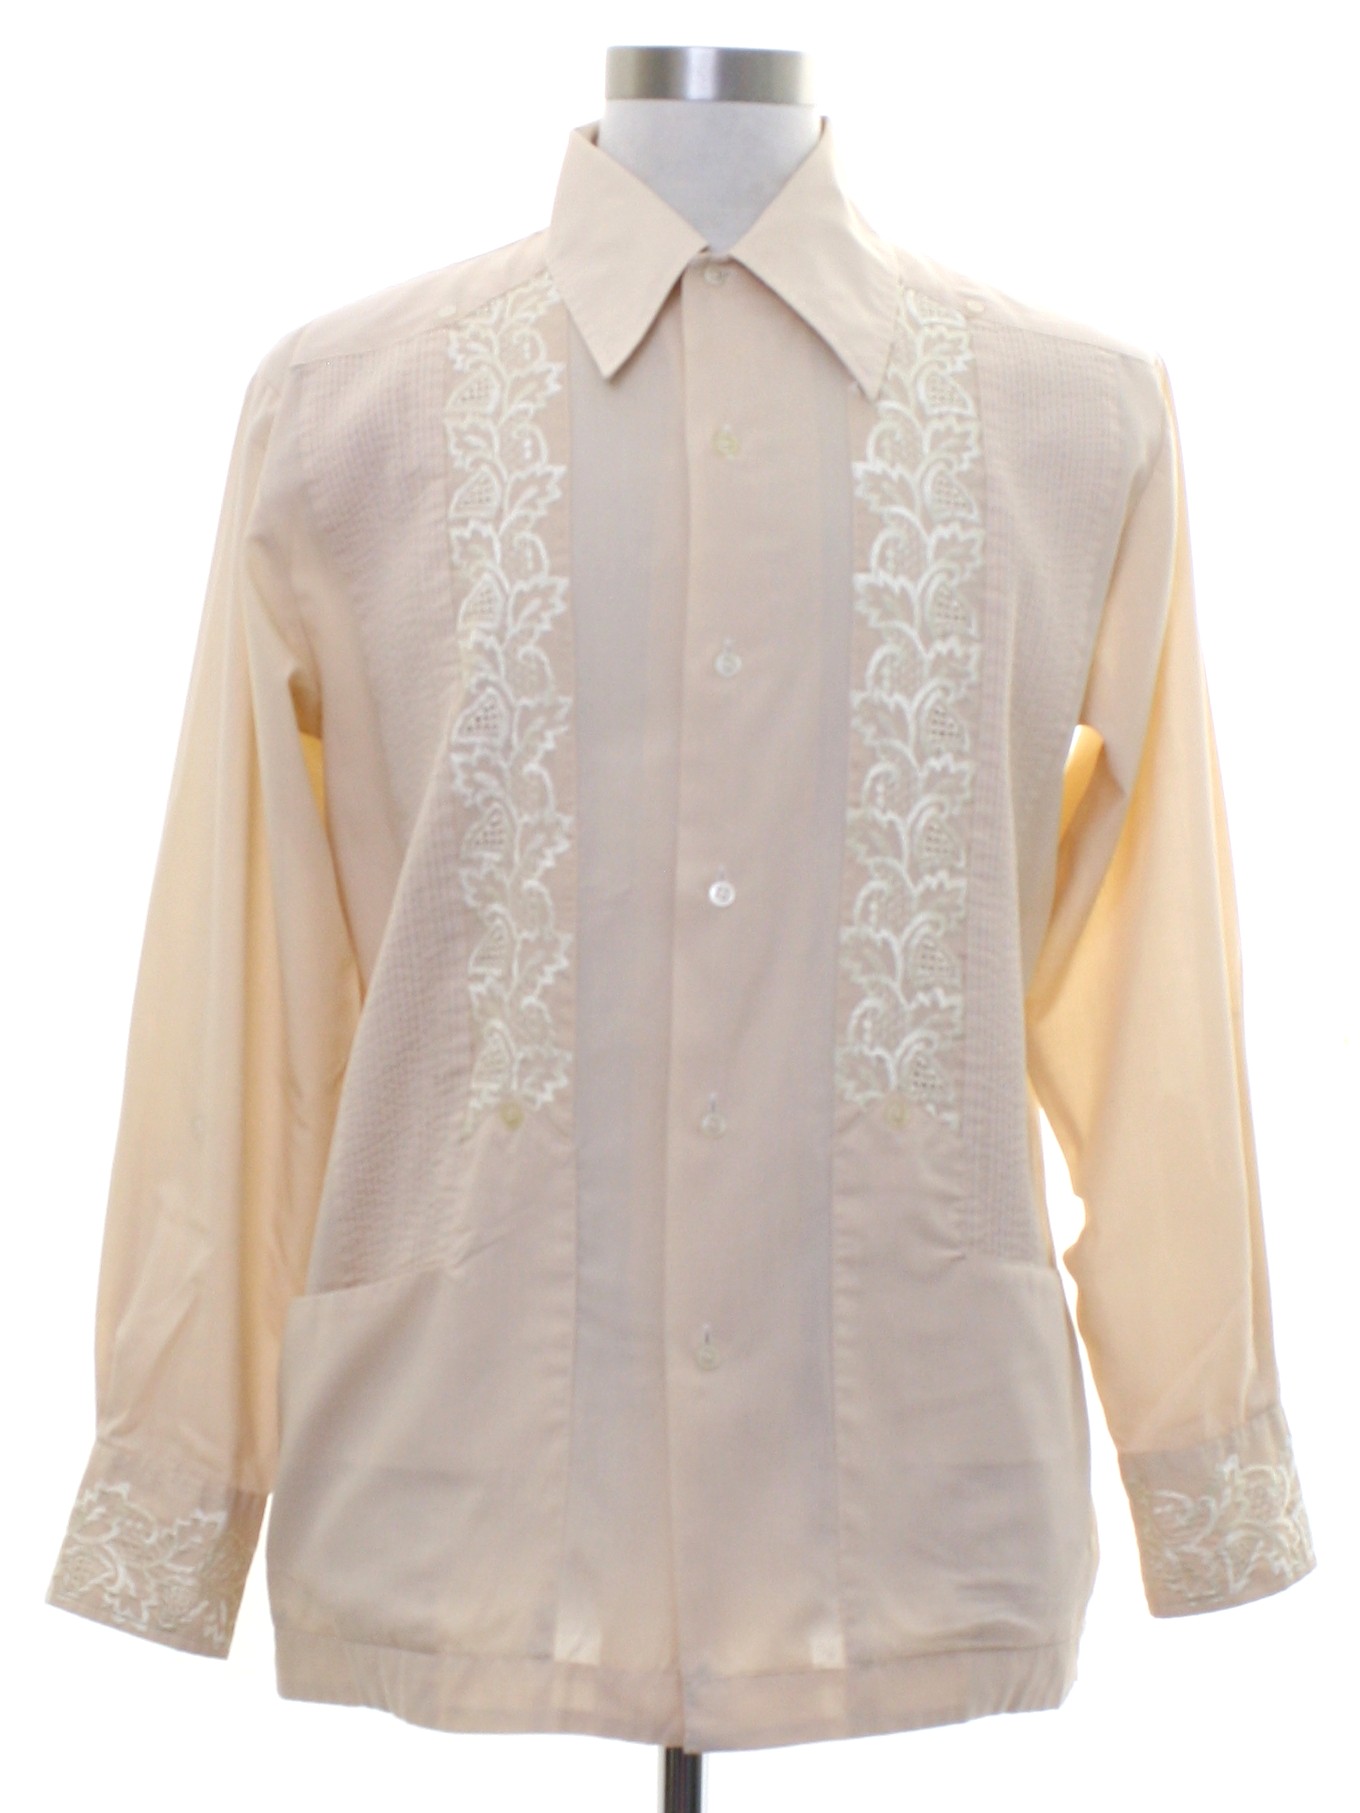 Vintage 1970's Guayabera Shirt: 70s -Guayabera- Mens beige background ...